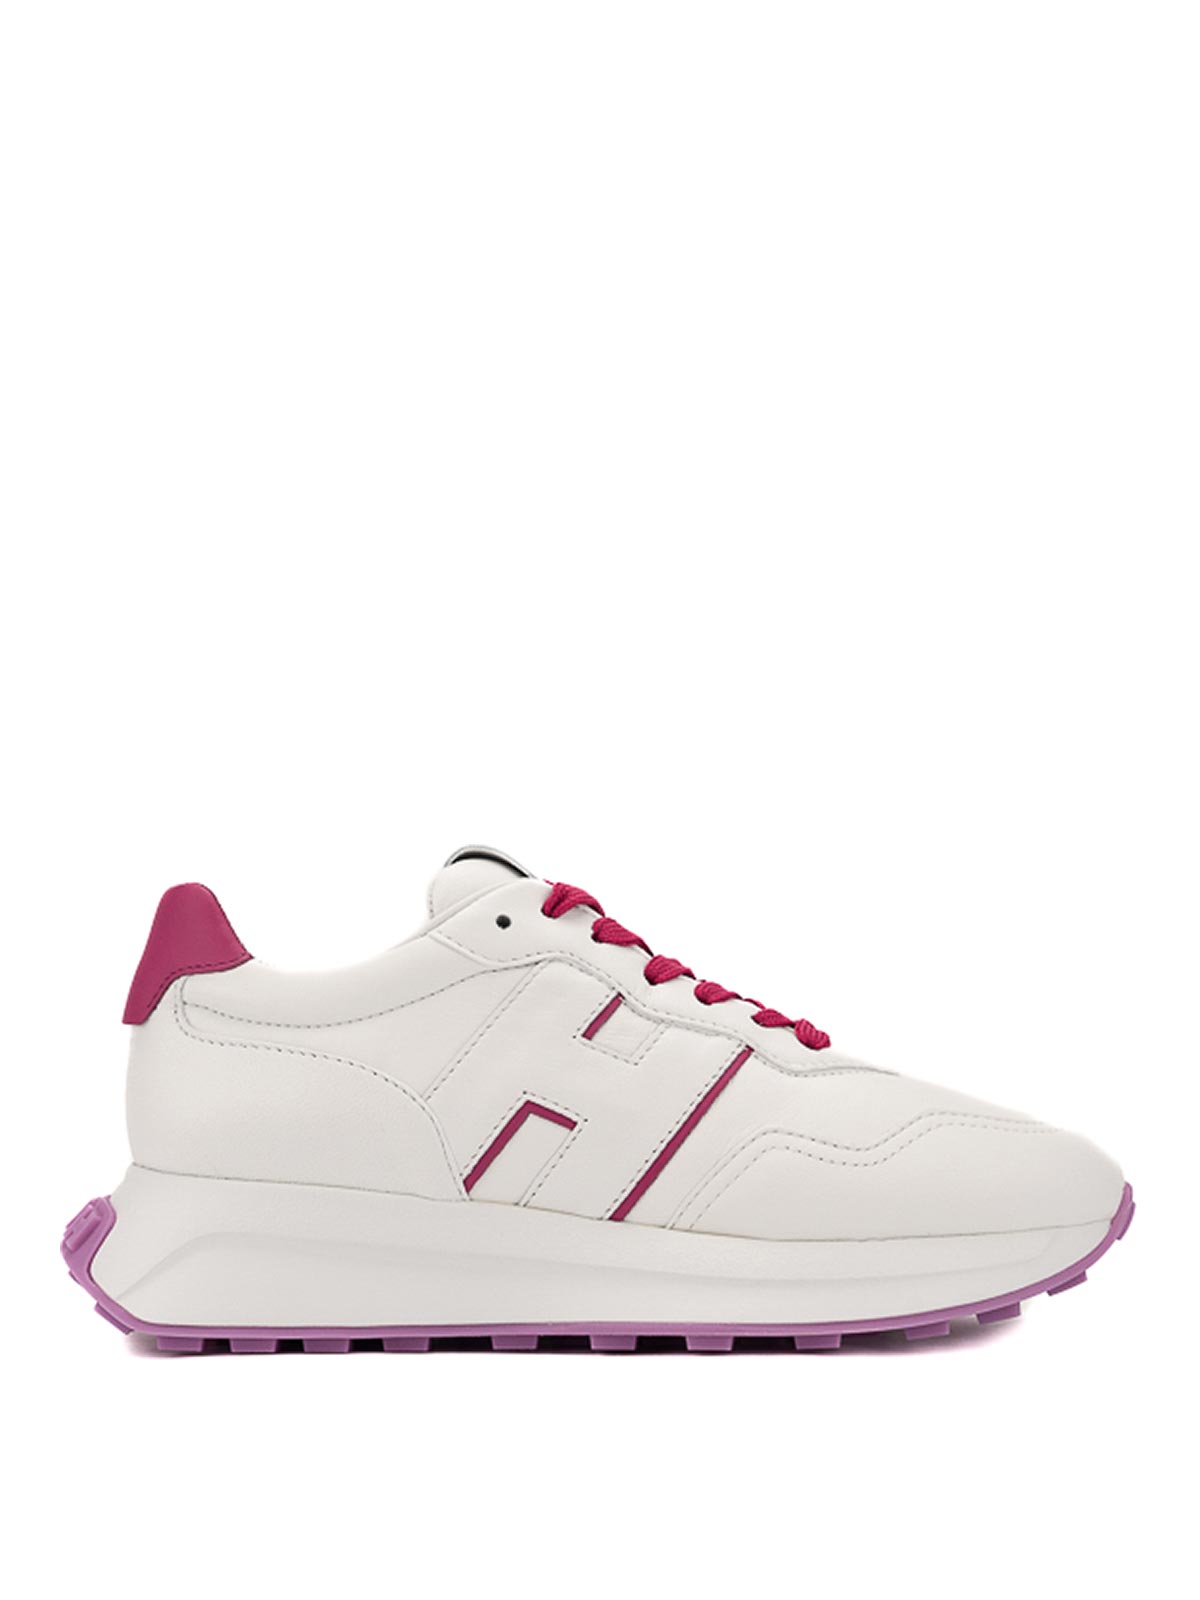 Hogan H641 White Fuchsia Sneakers